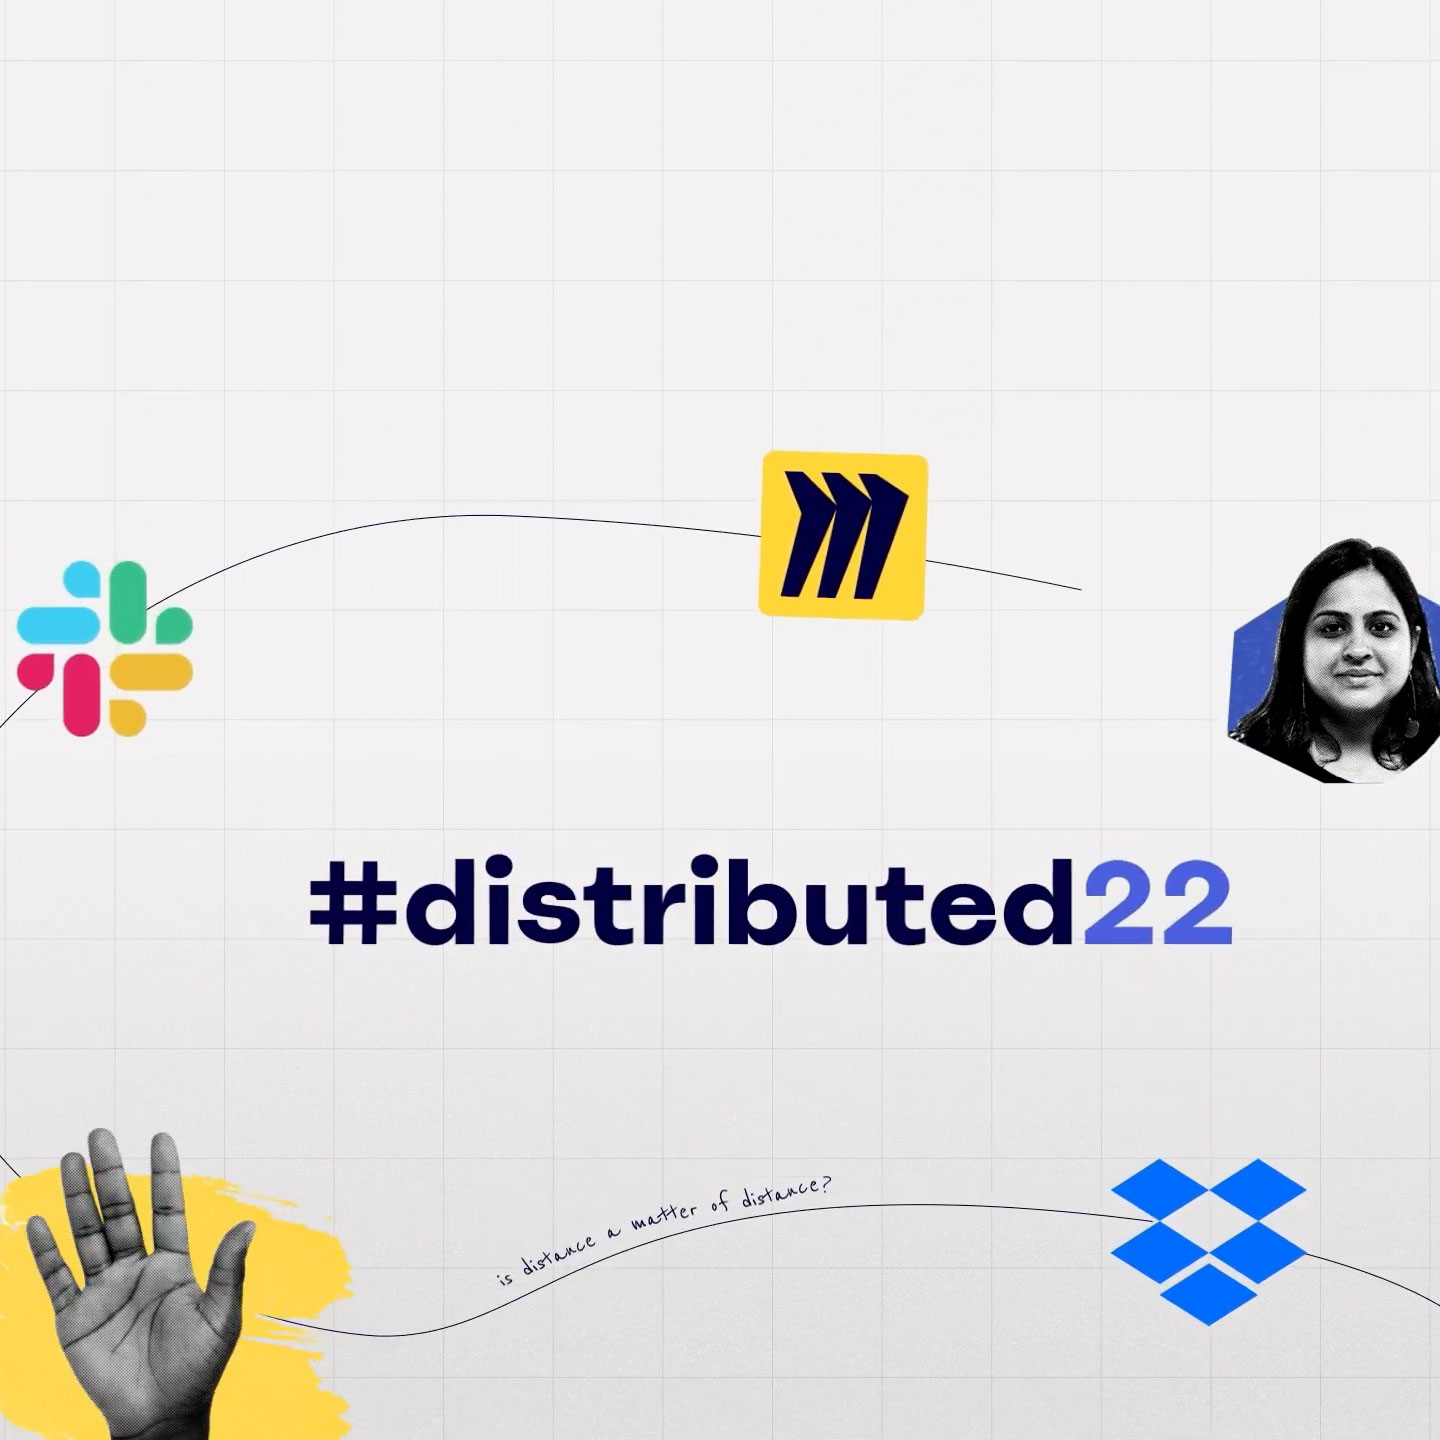 Tarjeta de título del evento #distributed22 con logos de Miro, Slack y Dropbox